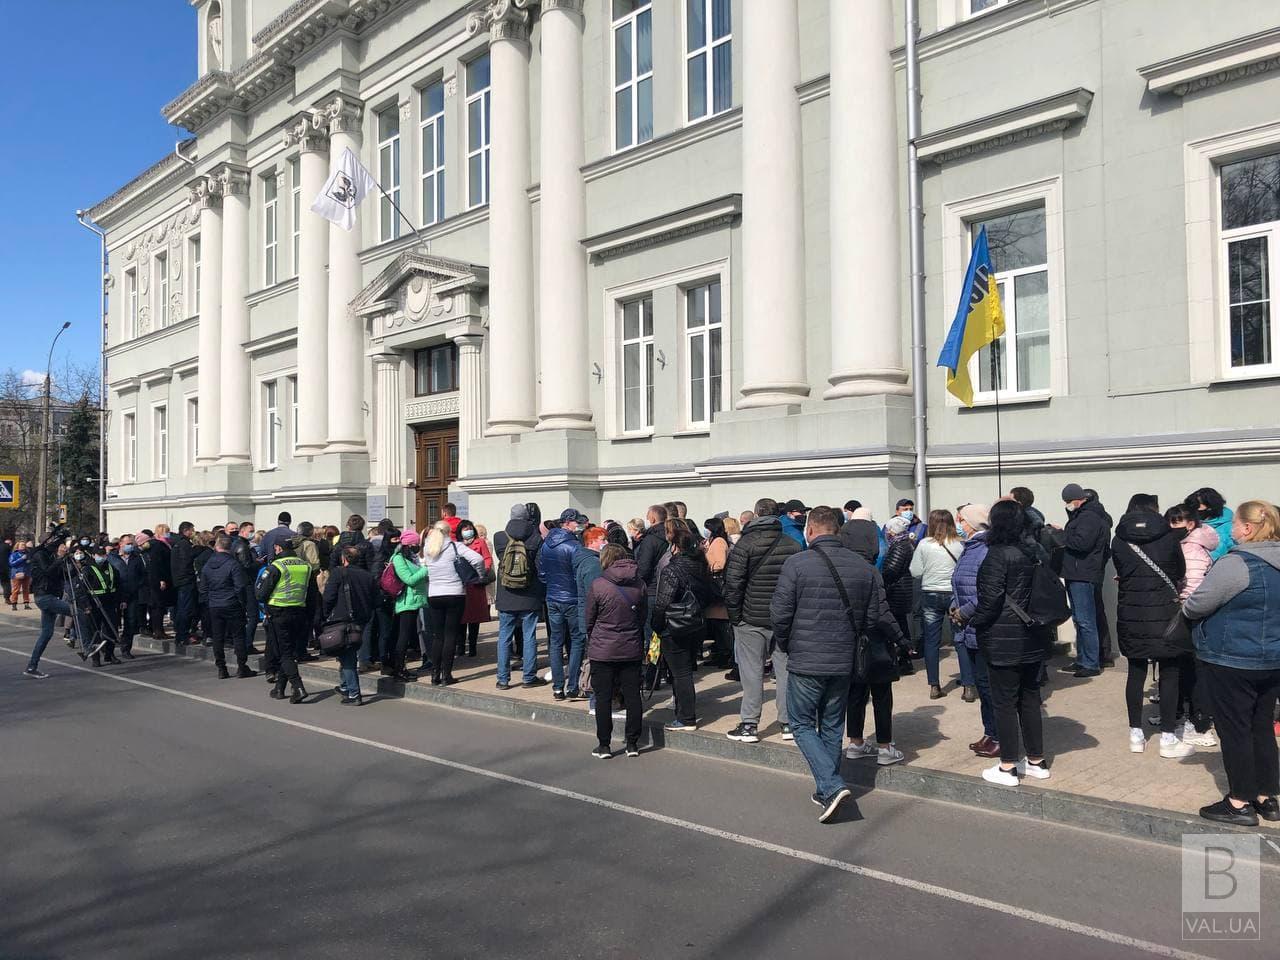 Чернігівські підприємці мітингують під стінами міської ради. ФОТОфакт